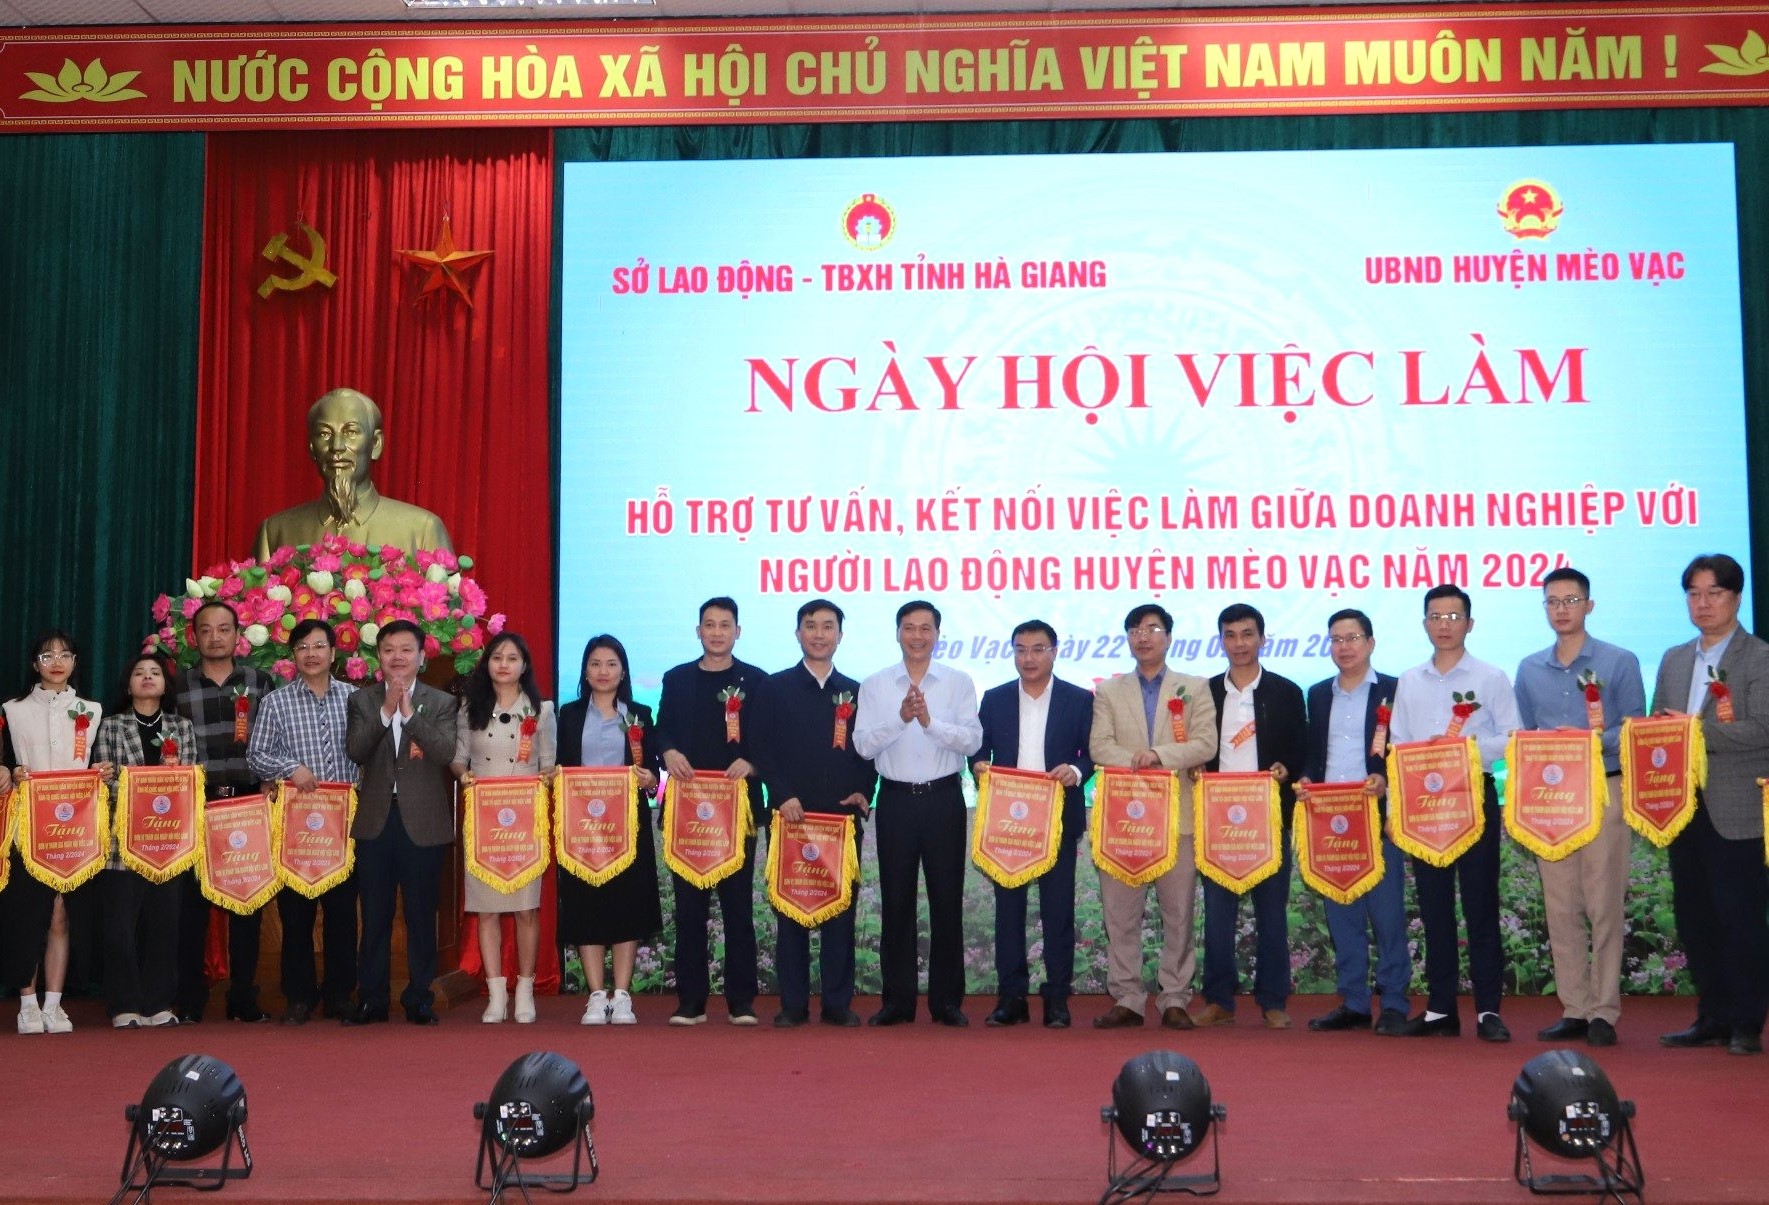 Lãnh đạo huyện Mèo Vạc trao cờ lưu niệm cho các công ty, doanh nghiệp tham gia Ngày hội.